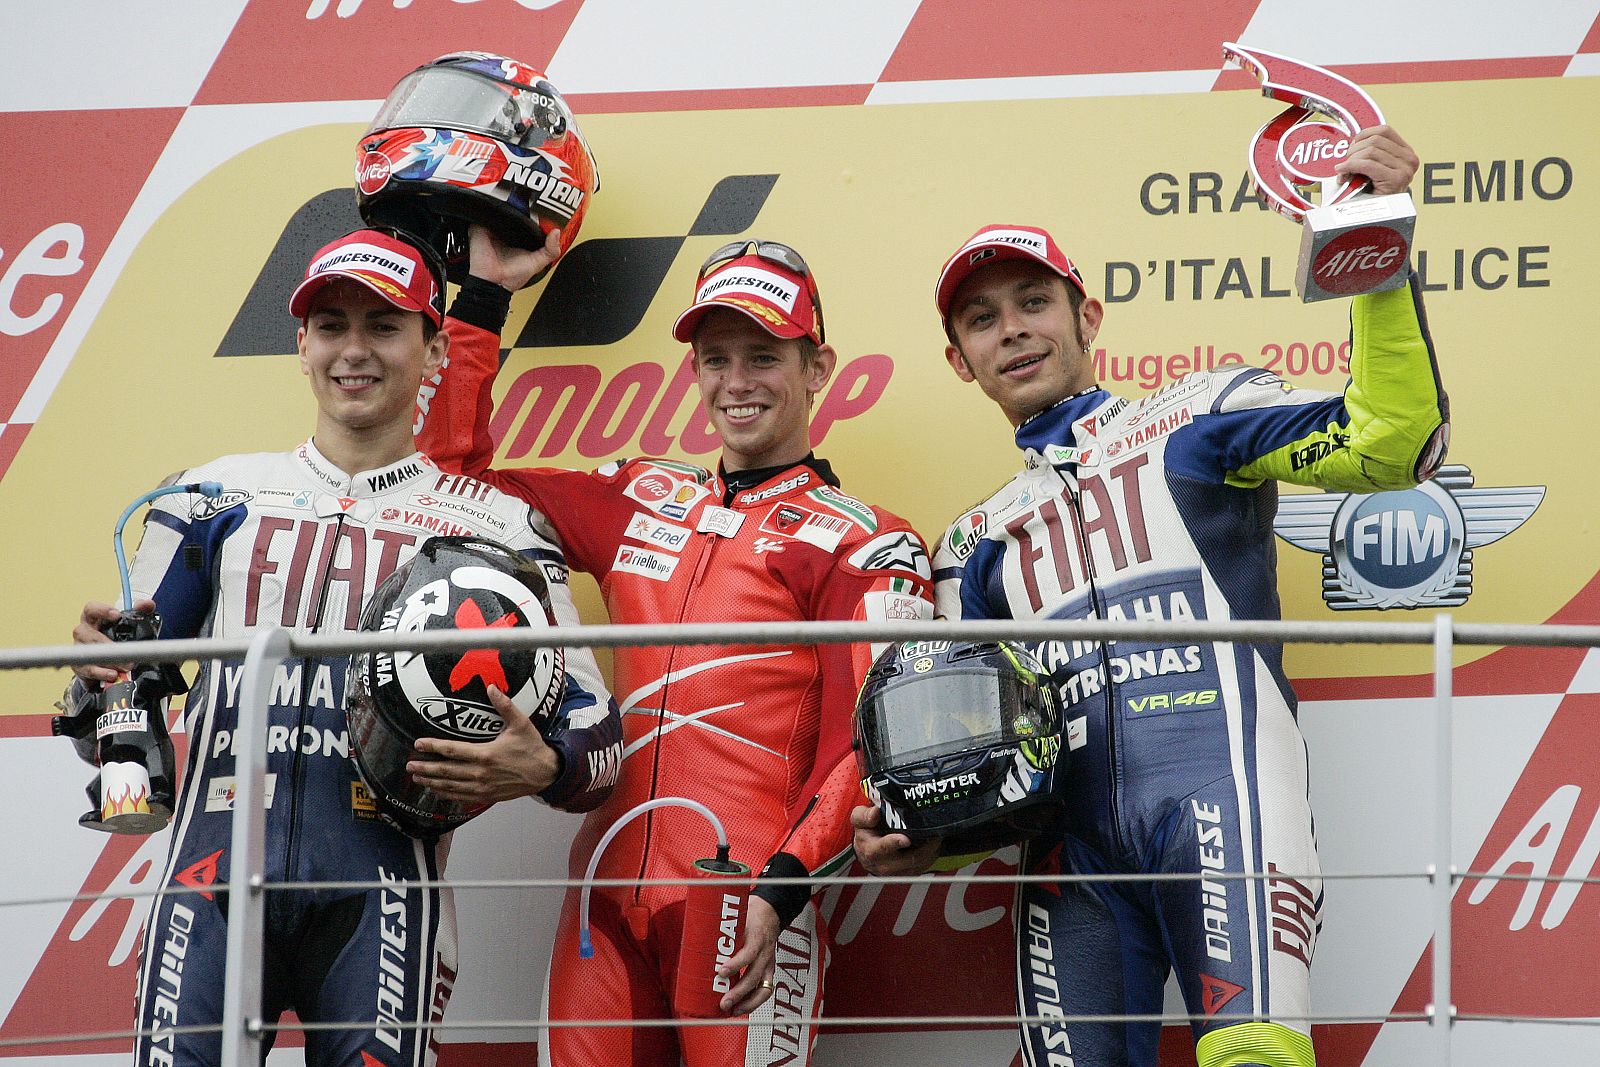 Lorenzo consiguió un valioso segundo puesto en el podio del GP de Italia.